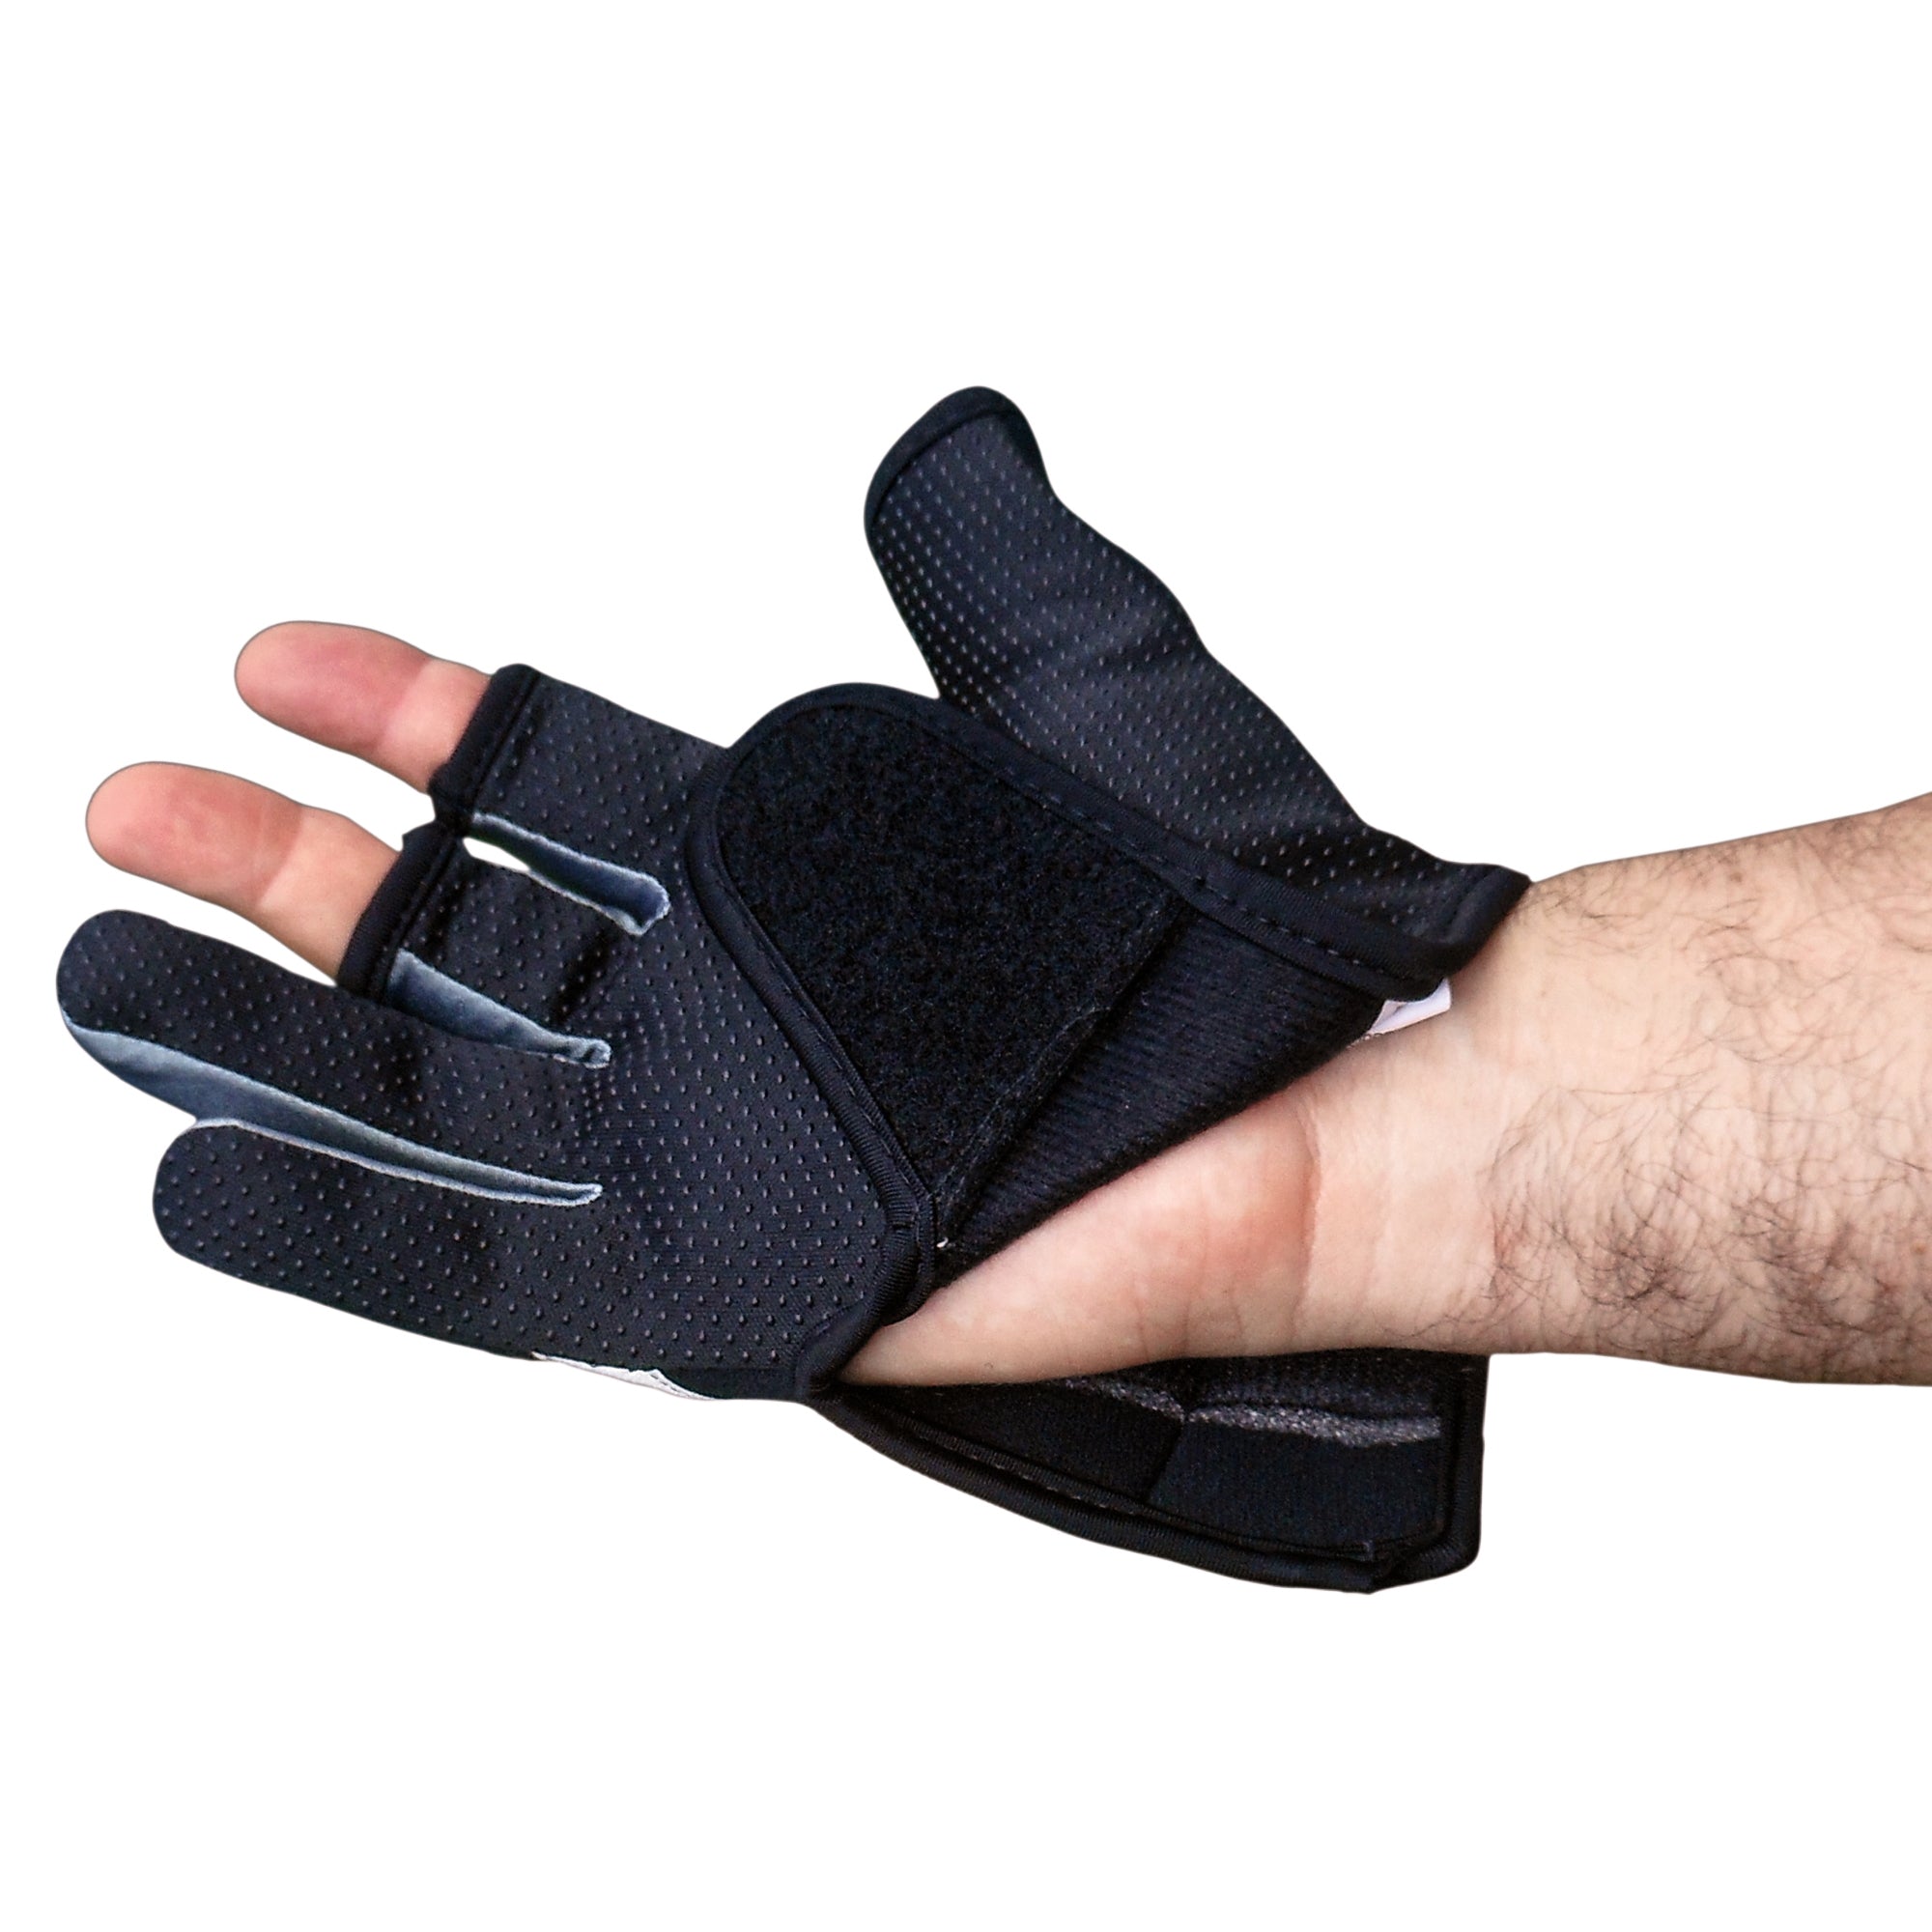 Fisherman Glove, Black, Size XL - FO3774